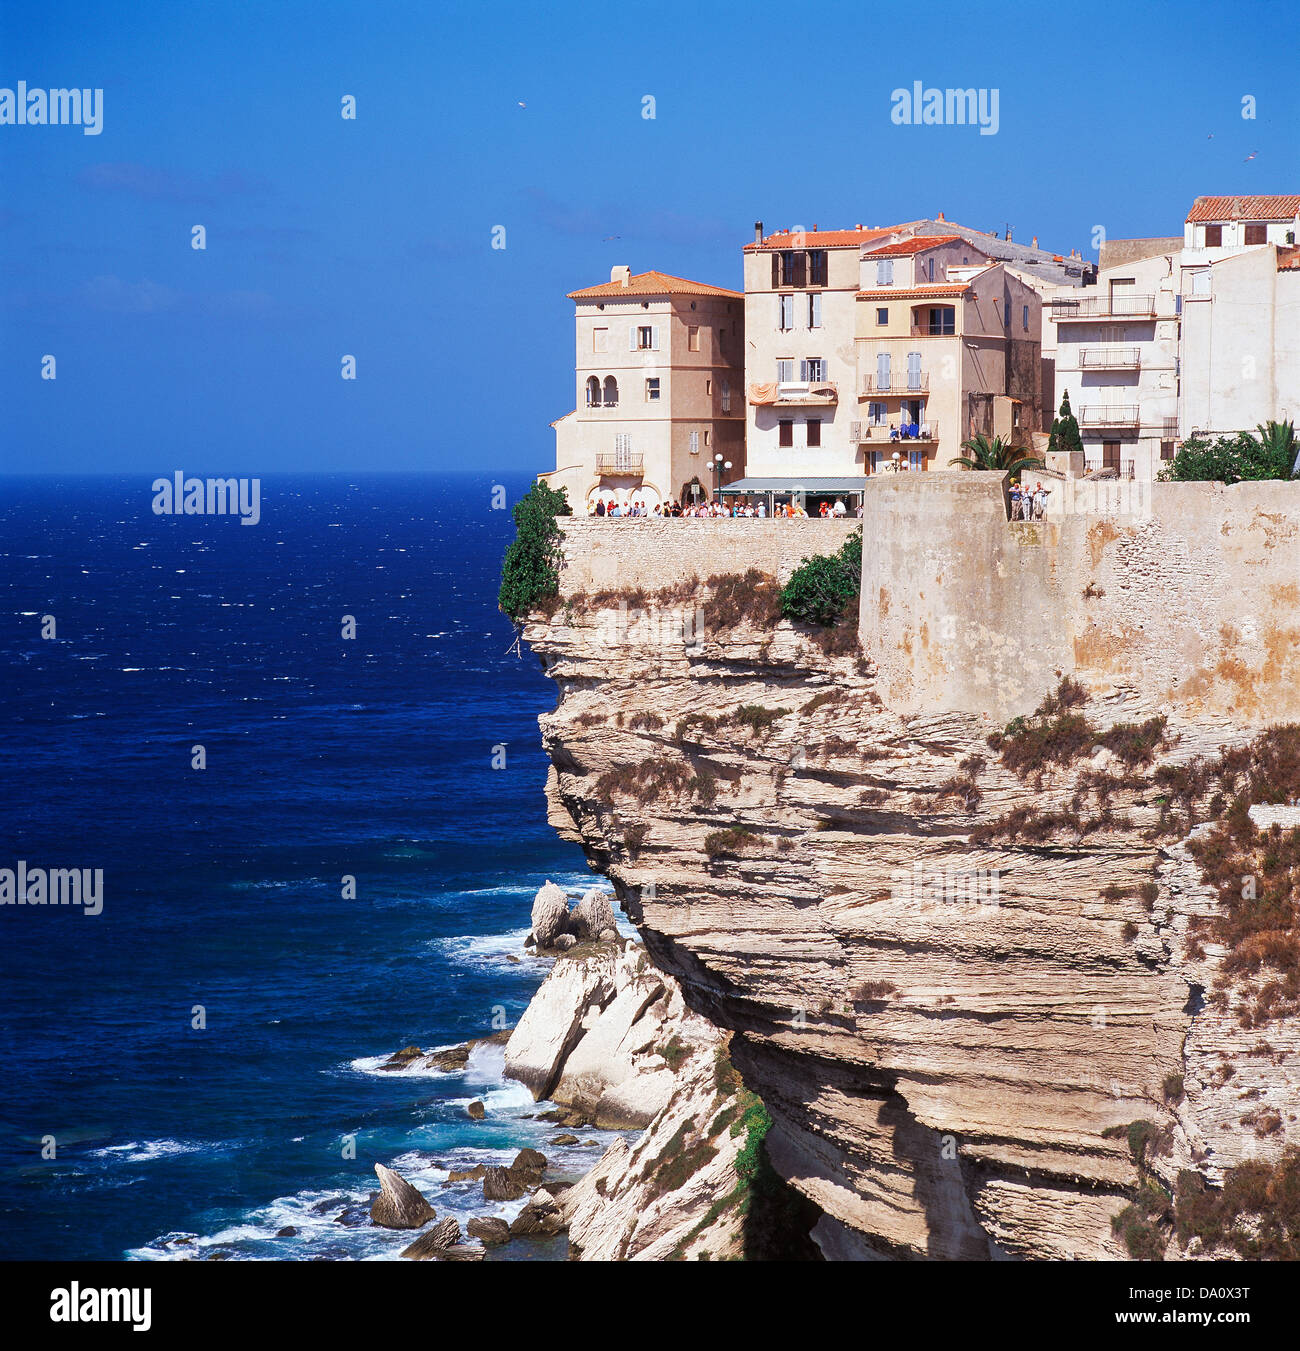 De luxe donnant sur la mer, Bonifacio, Corse, France Banque D'Images